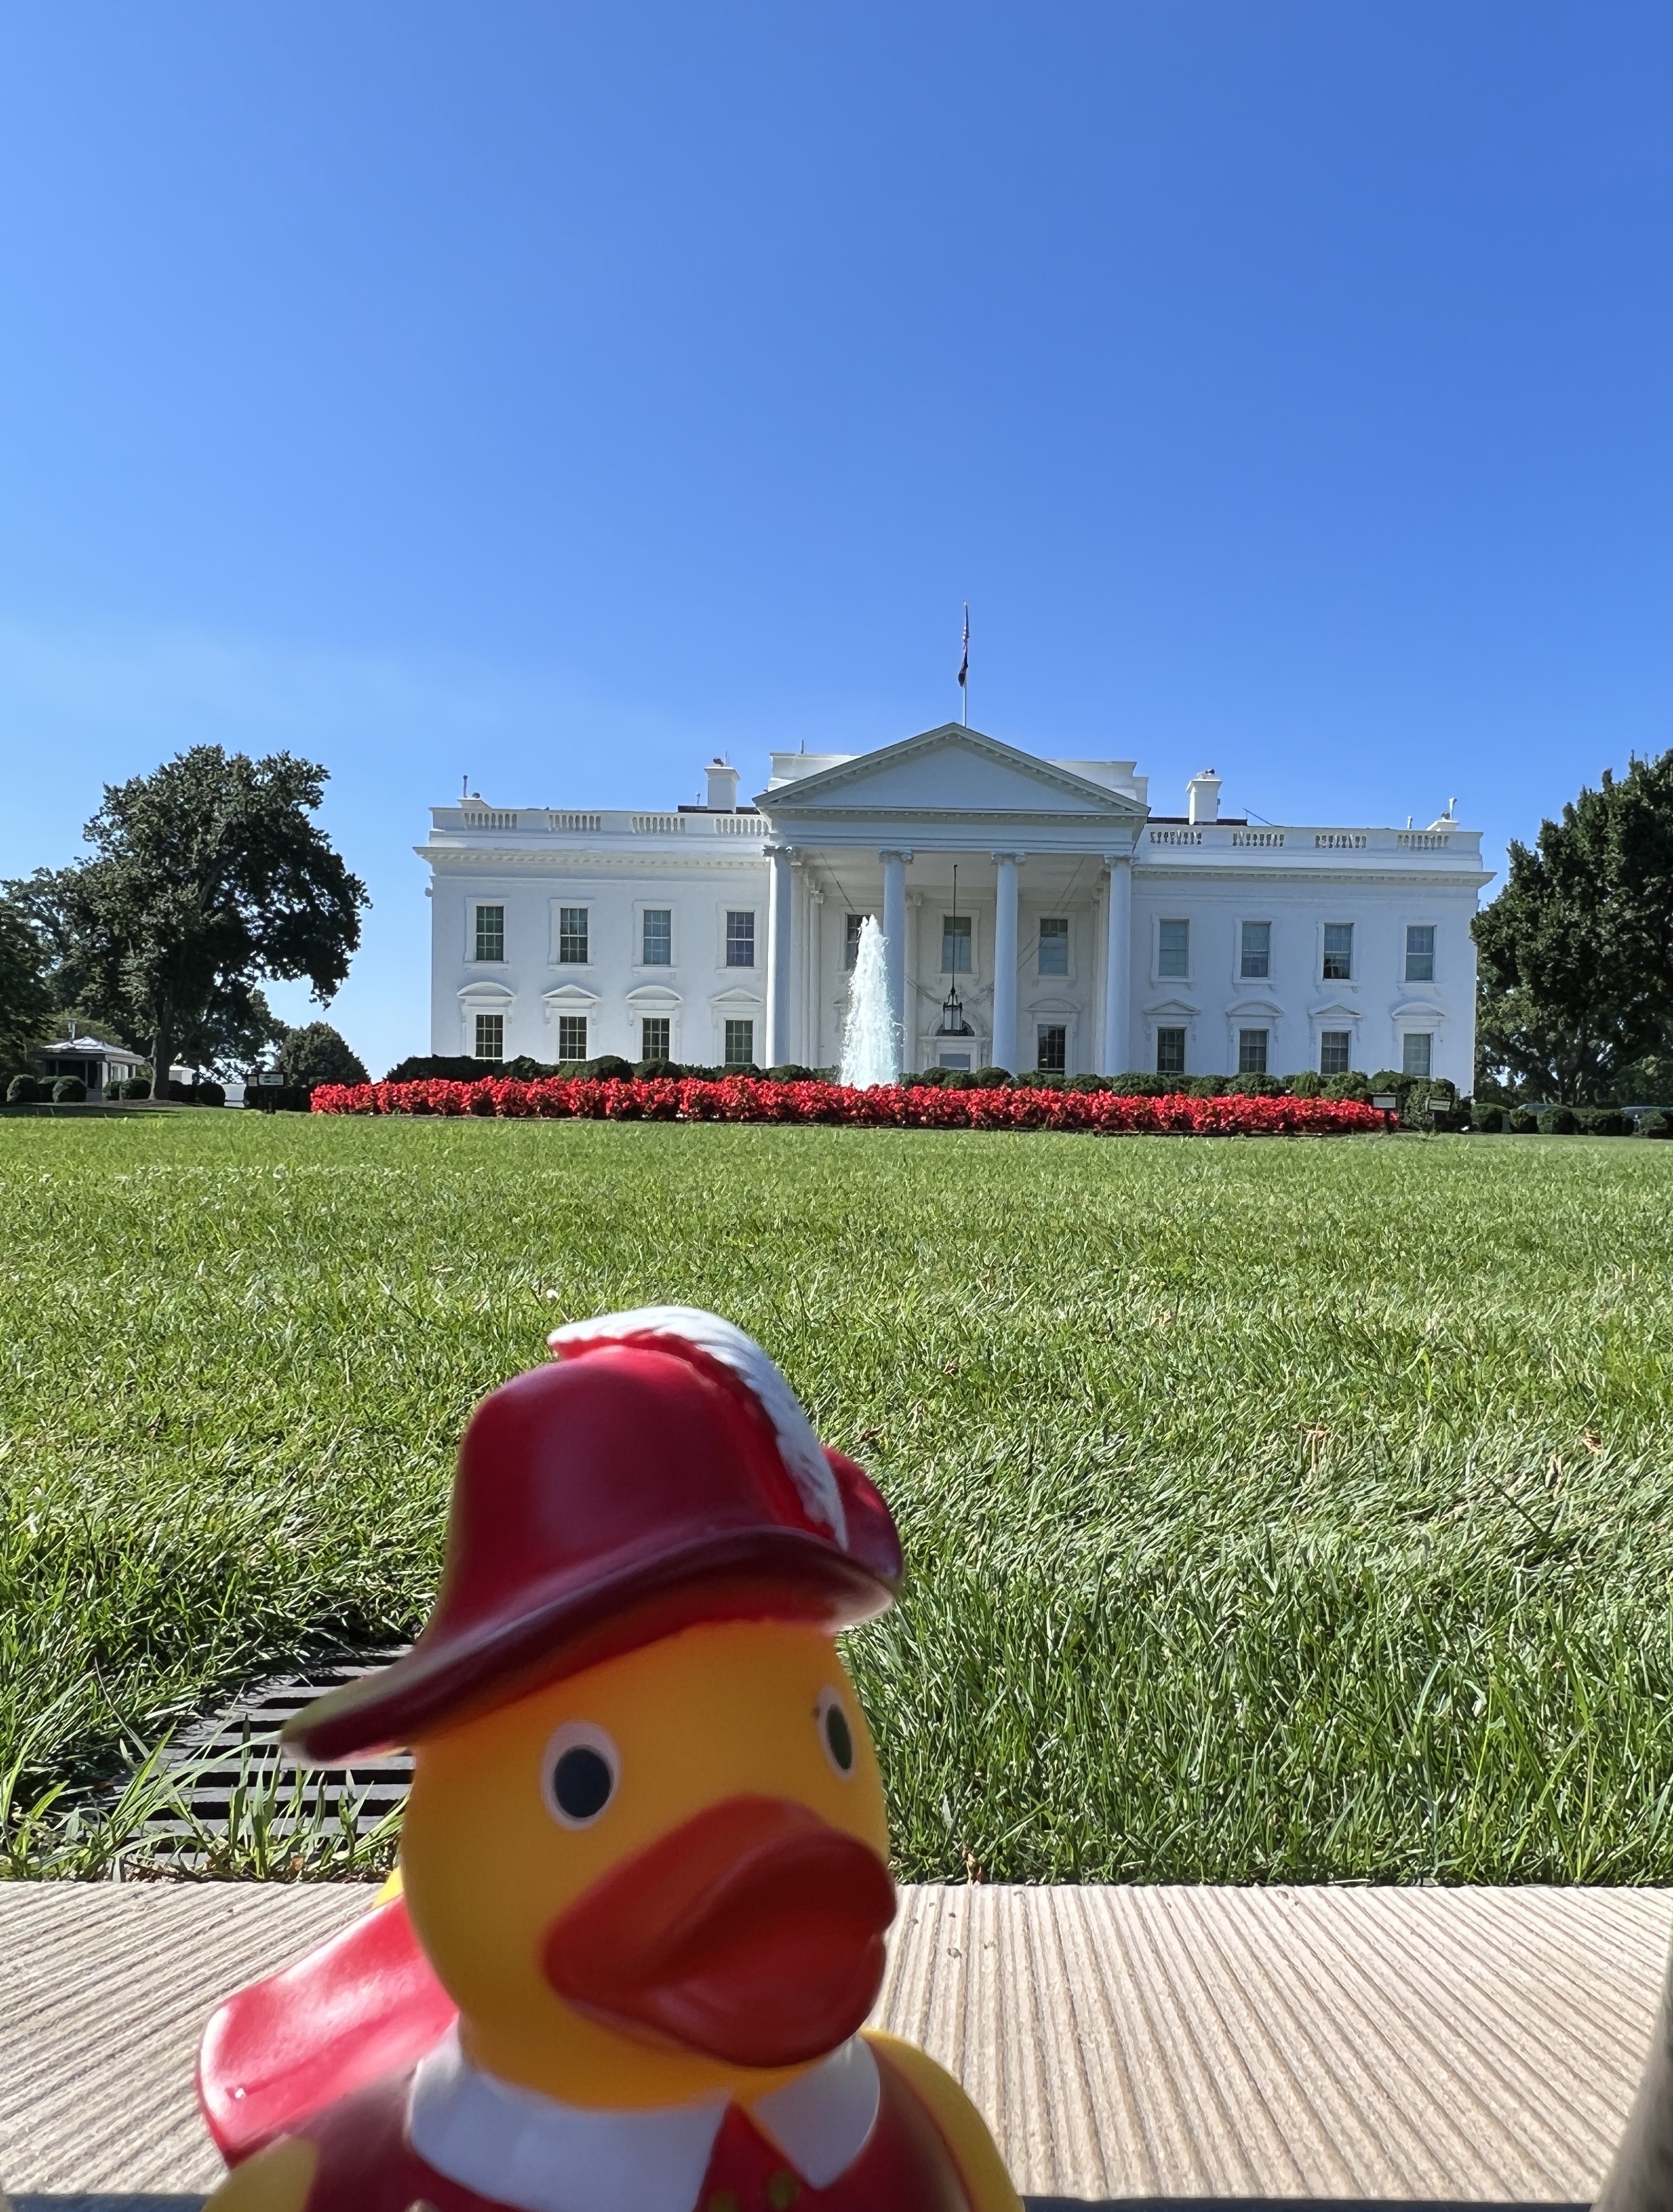  Werner vor dem Weißen Haus, Washington D.C. (USA) 